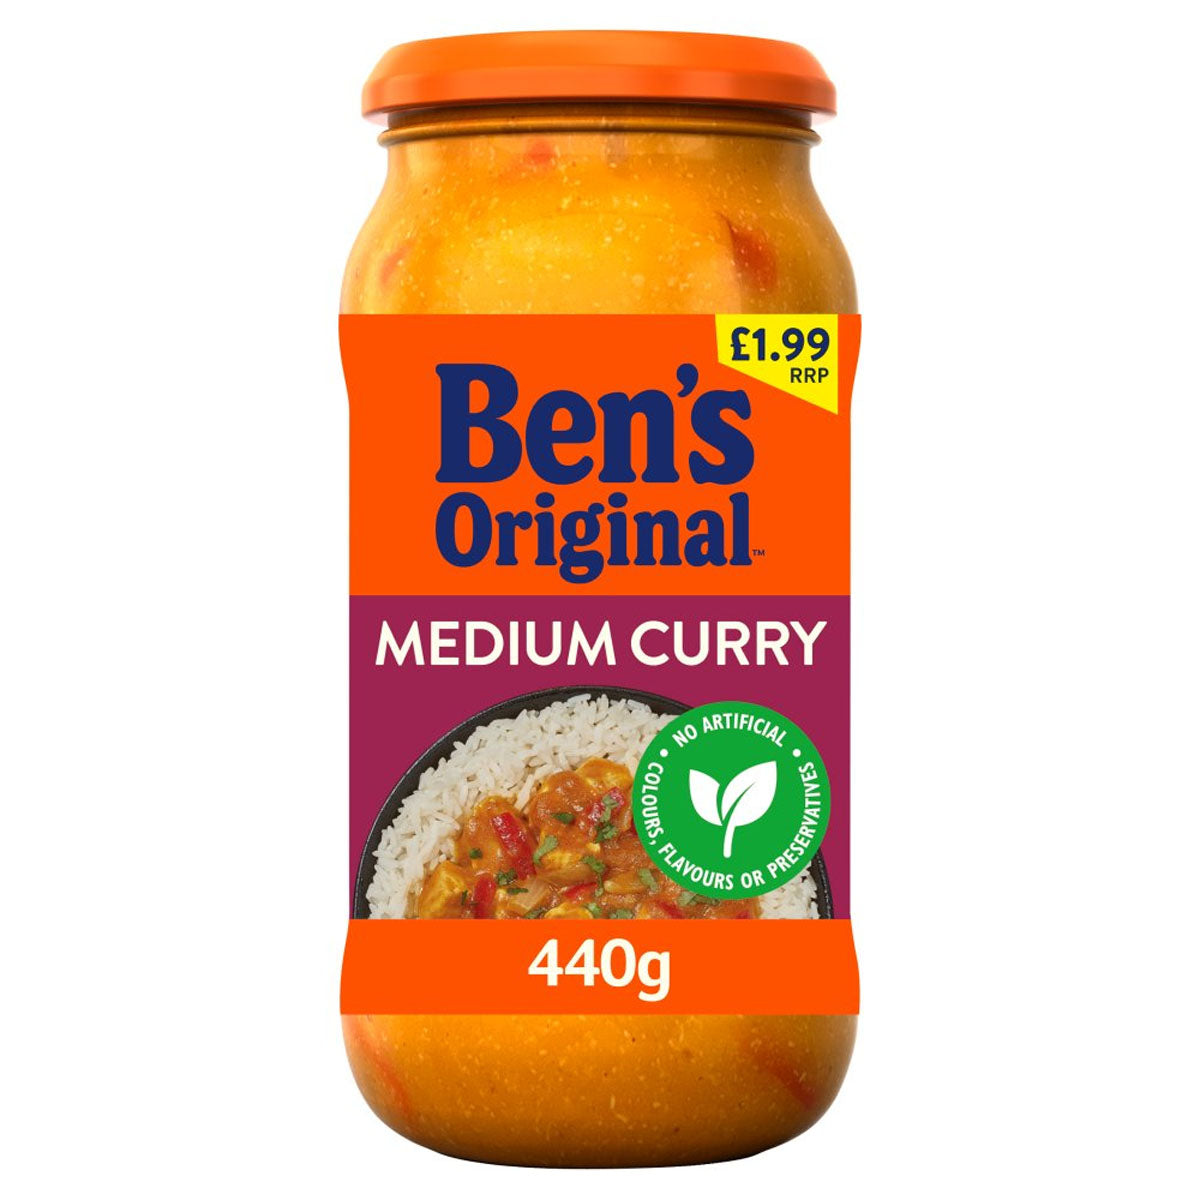 A jar of Bens Original - Medium Curry Sauce - 440g with a label.